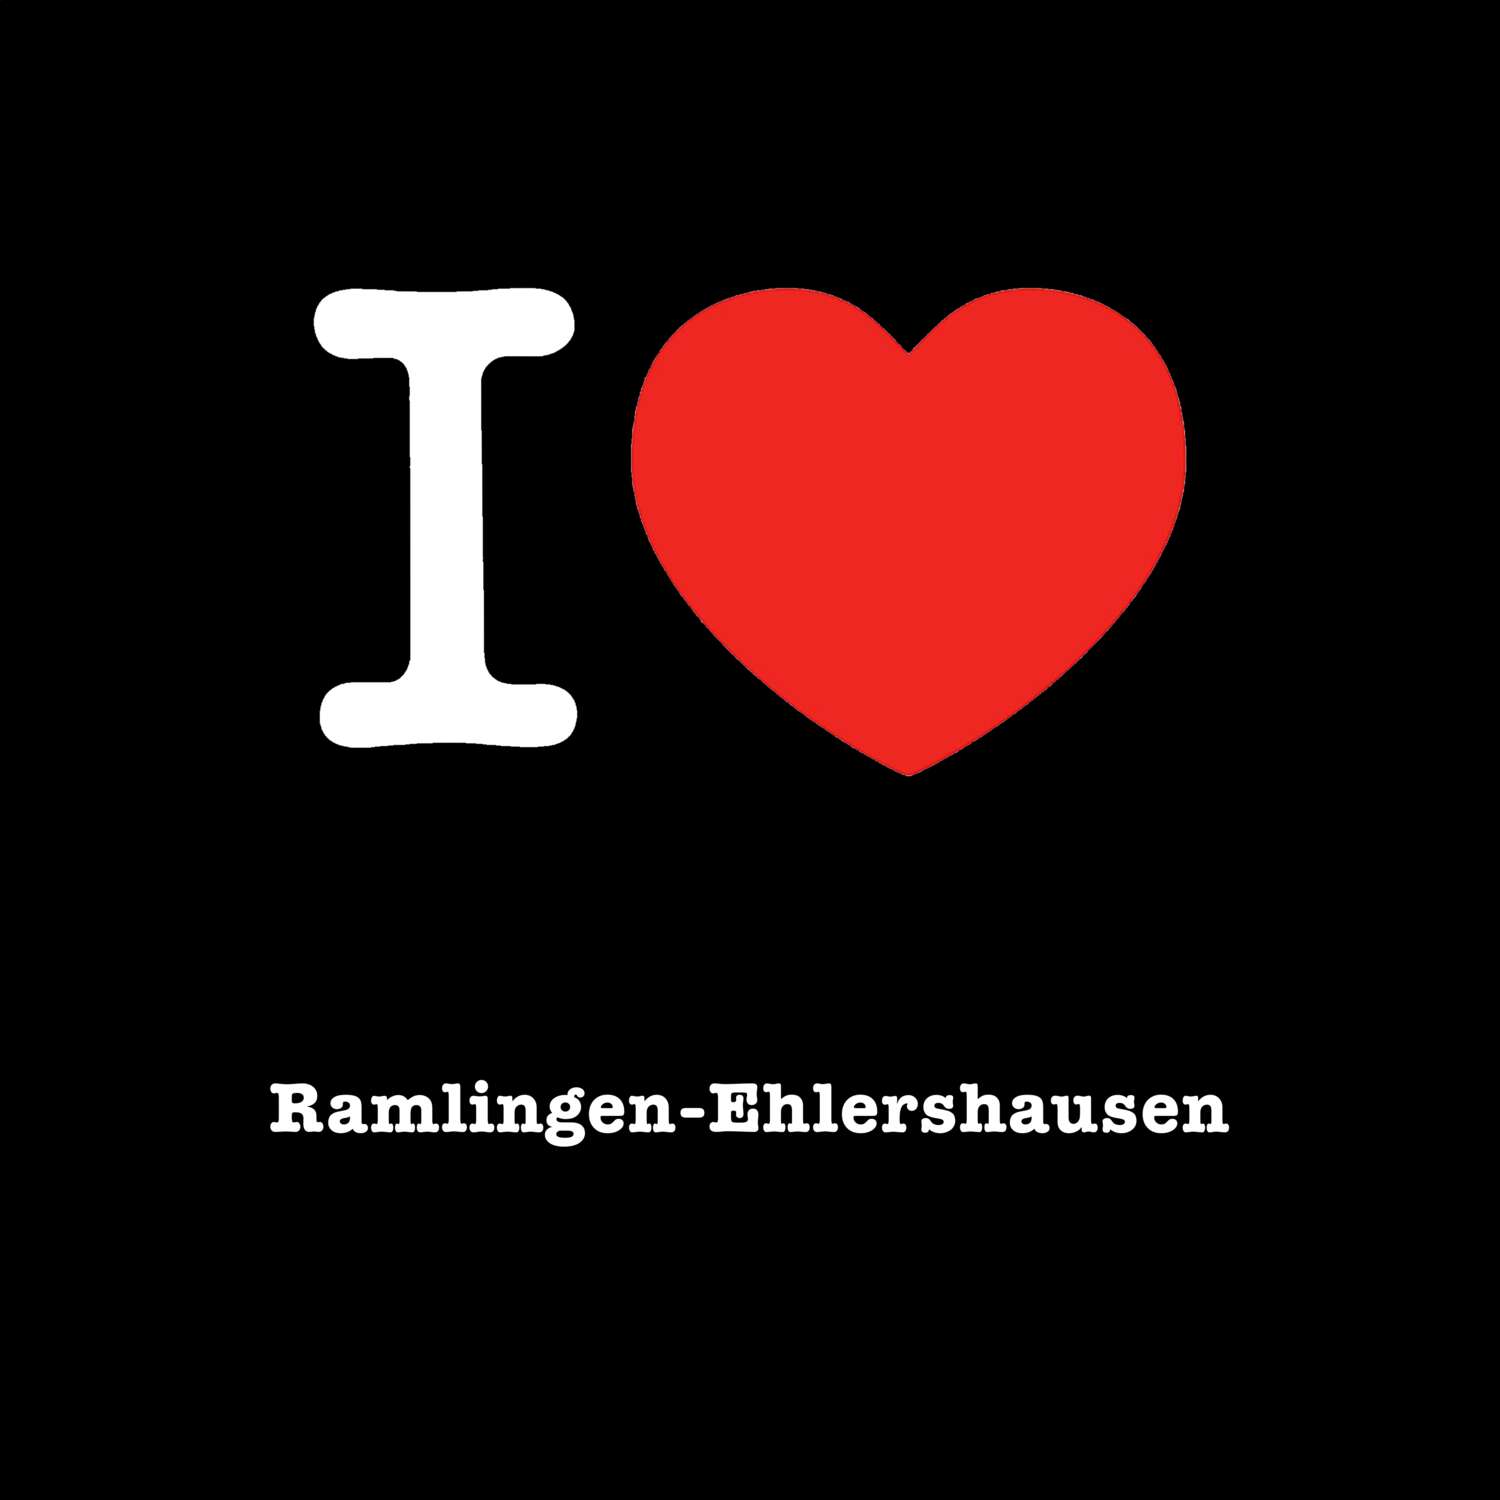 Ramlingen-Ehlershausen T-Shirt »I love«